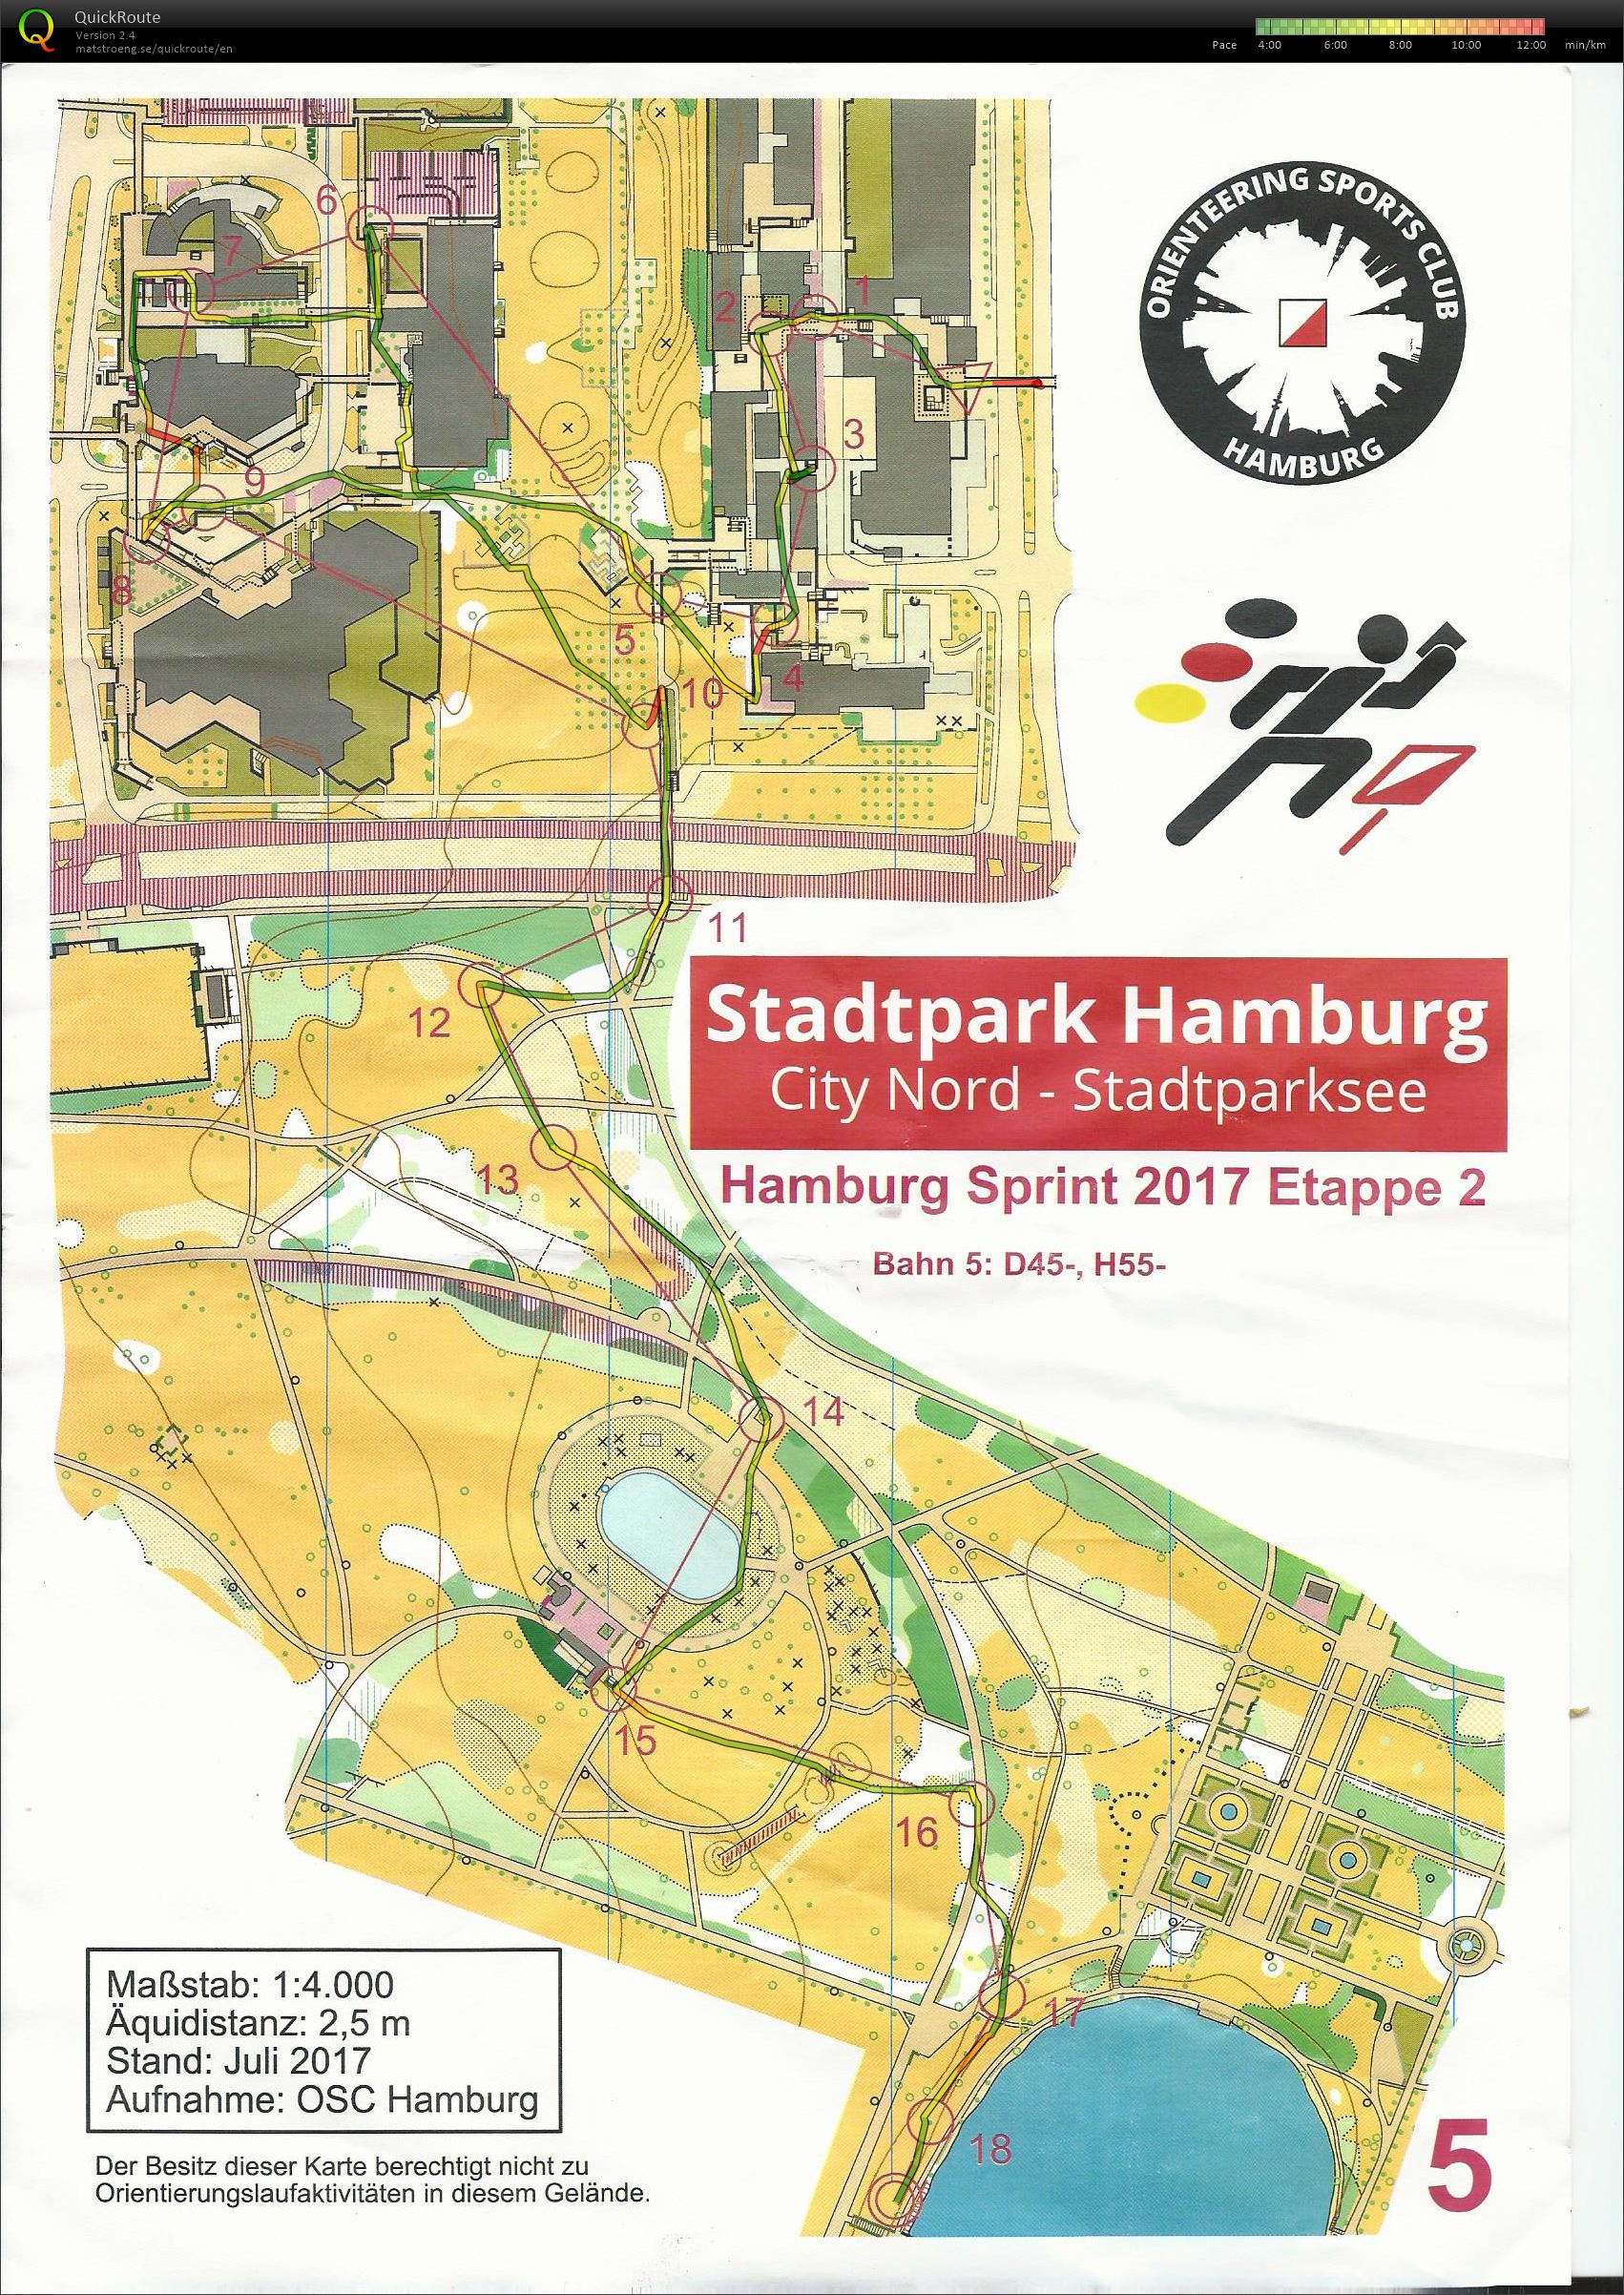 Hamburg sprint 2017 etape 2 (12-08-2017)